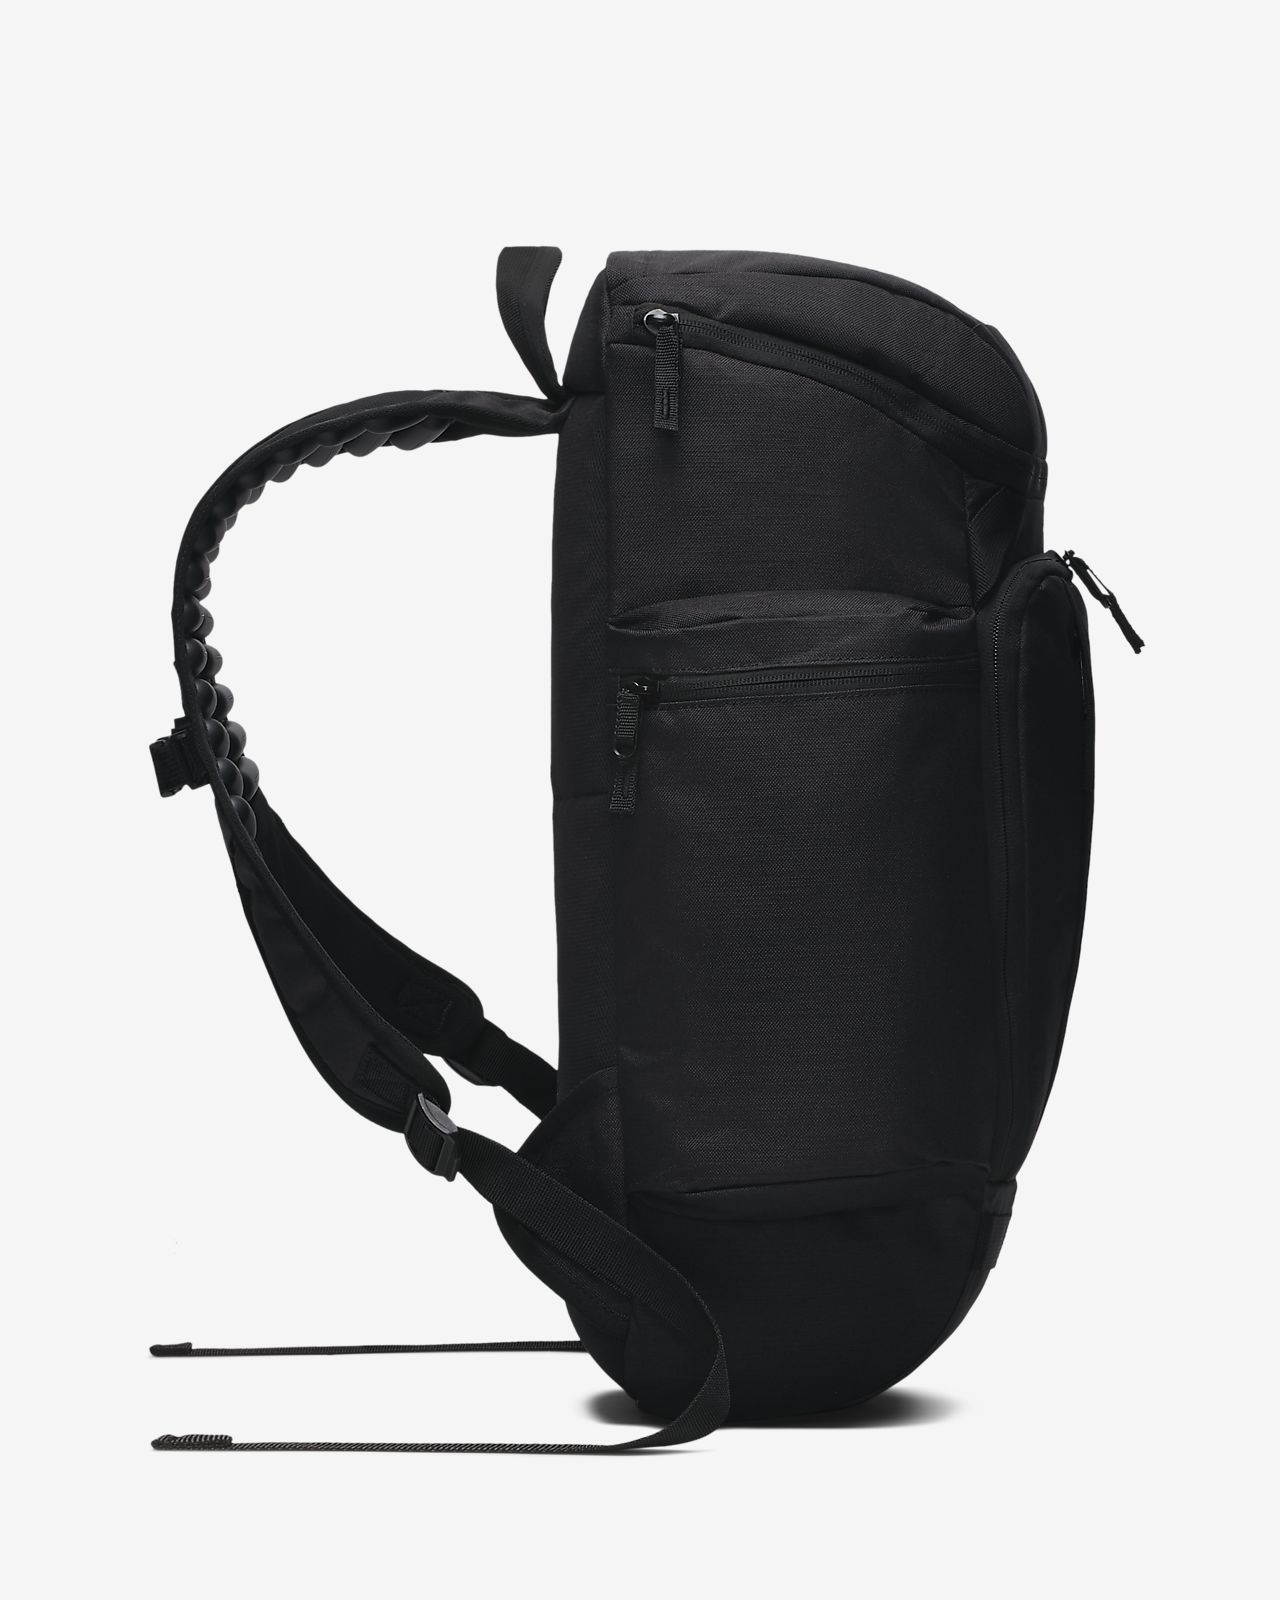 lebron backpack 2019